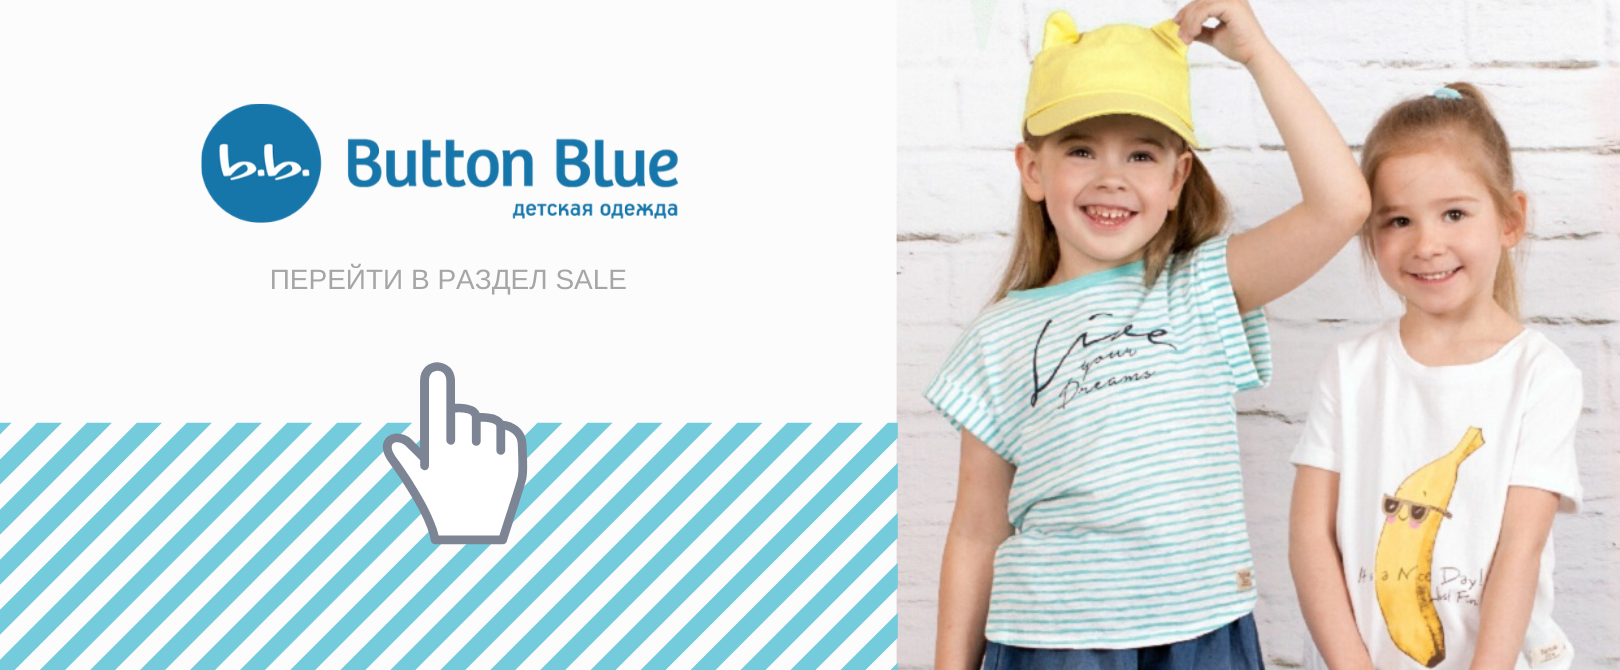 BUTTON BLUE детская одежда